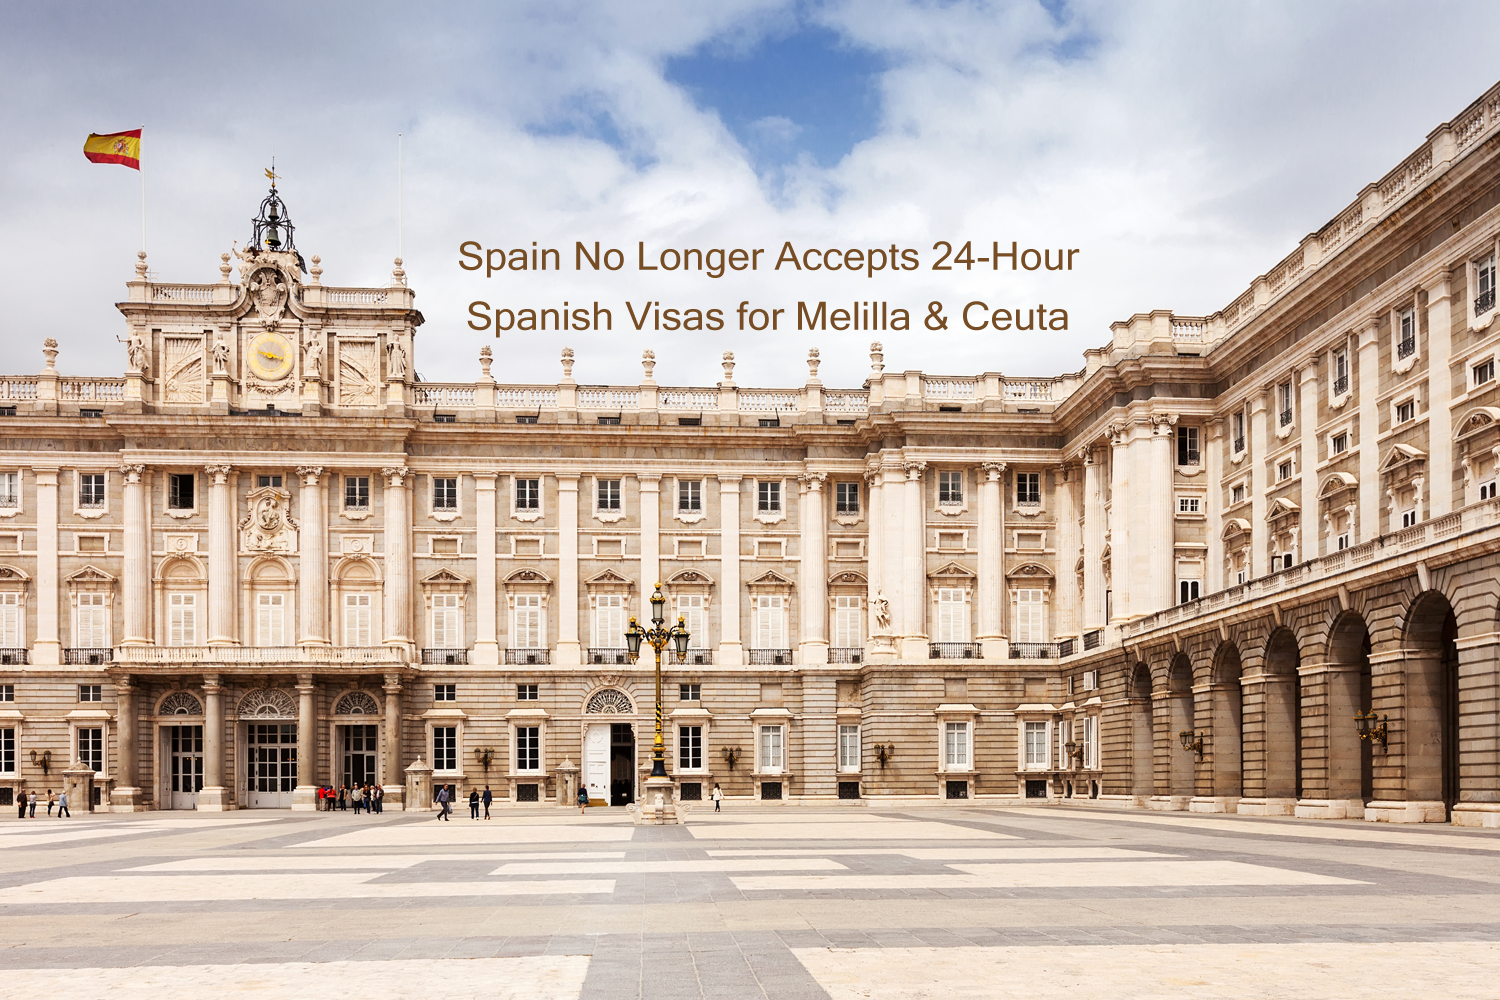 Spain No Longer Accepts 24-Hour Spanish Visas for Melilla & Ceuta.